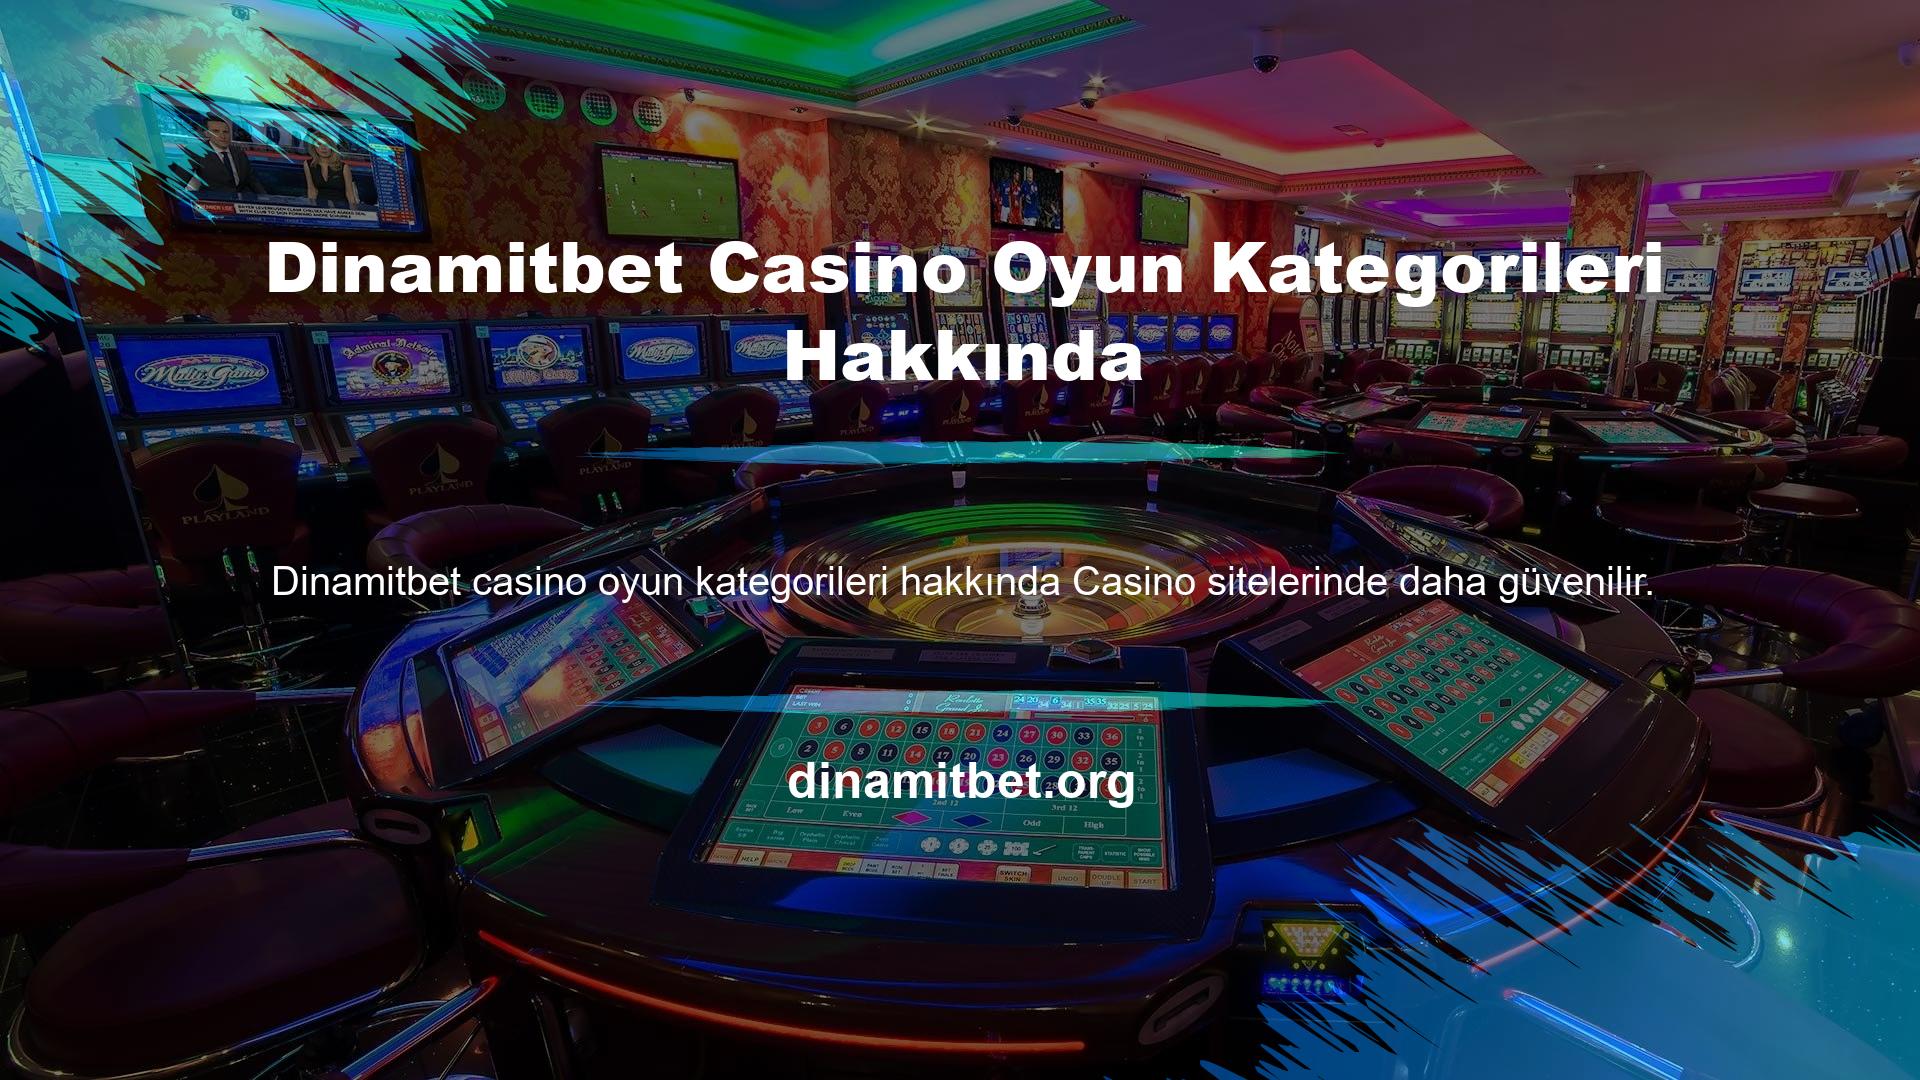 Canlı casino oyun alternatifleri arasında yer alan Dinamitbet kategorisinde Rulet, Blackjack, Baccarat, Casino Hold'em, Andar Bahar ve Evolution Lobby oyunlarından içerikler bulunmaktadır